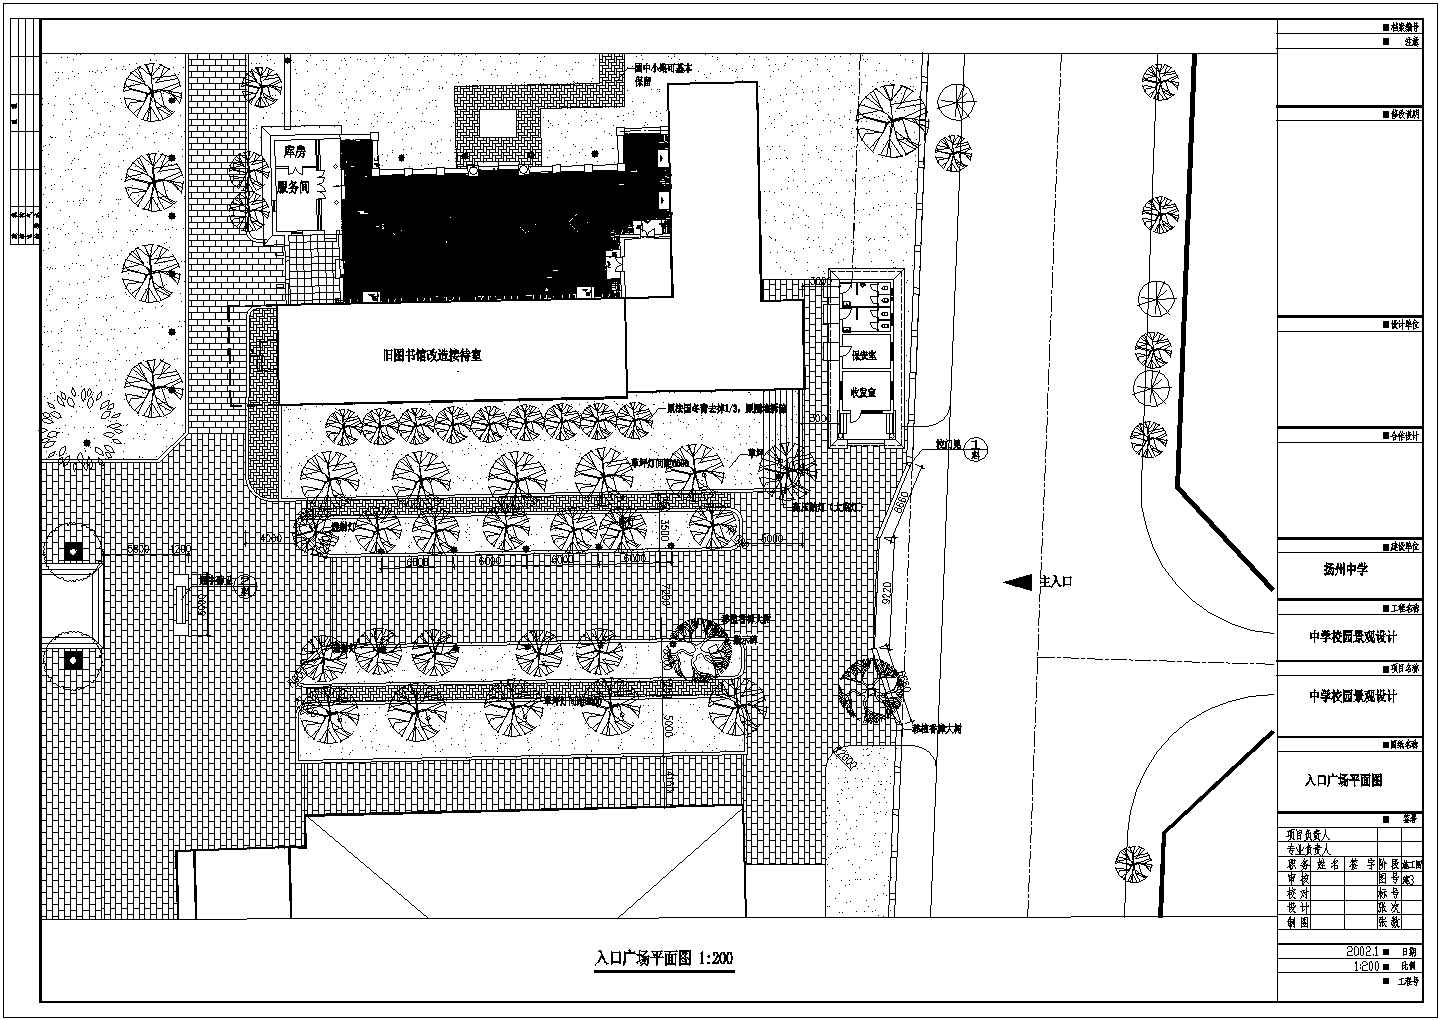 公园广场绿化CAD图纸-入口广场绿化设计图